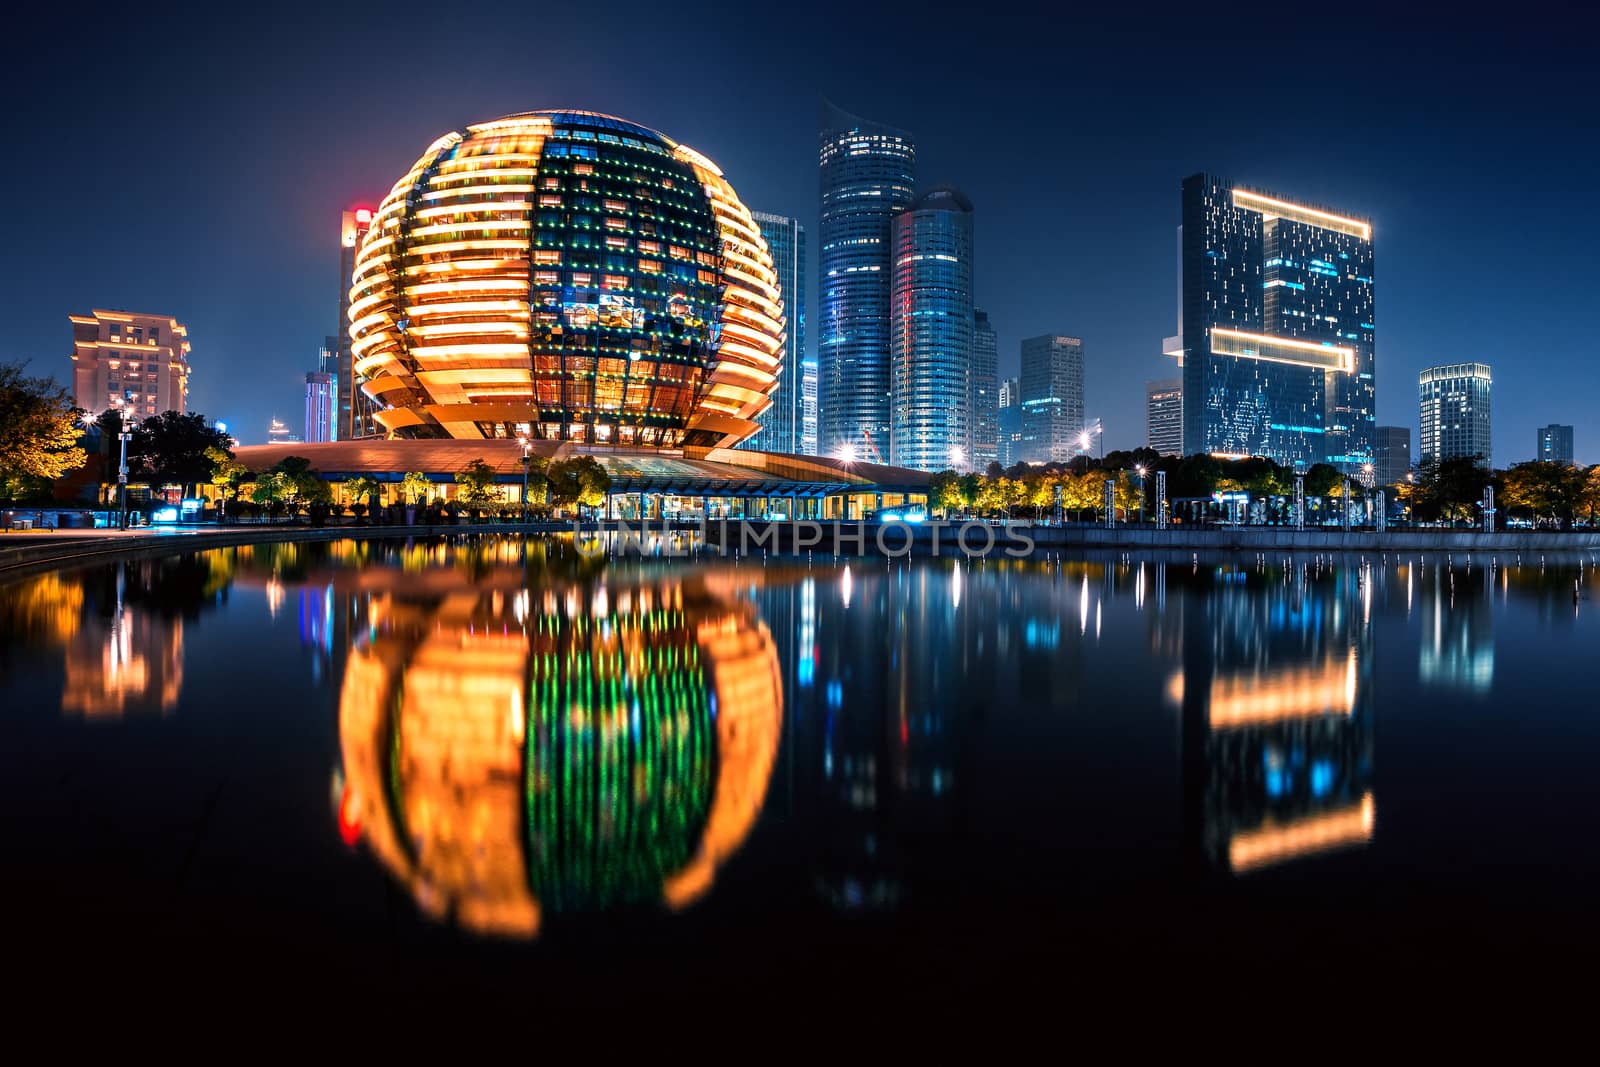 Night view of Qianjiang New Town with reflection, Hangzhou, Zhejiang, China by zhu_zhu